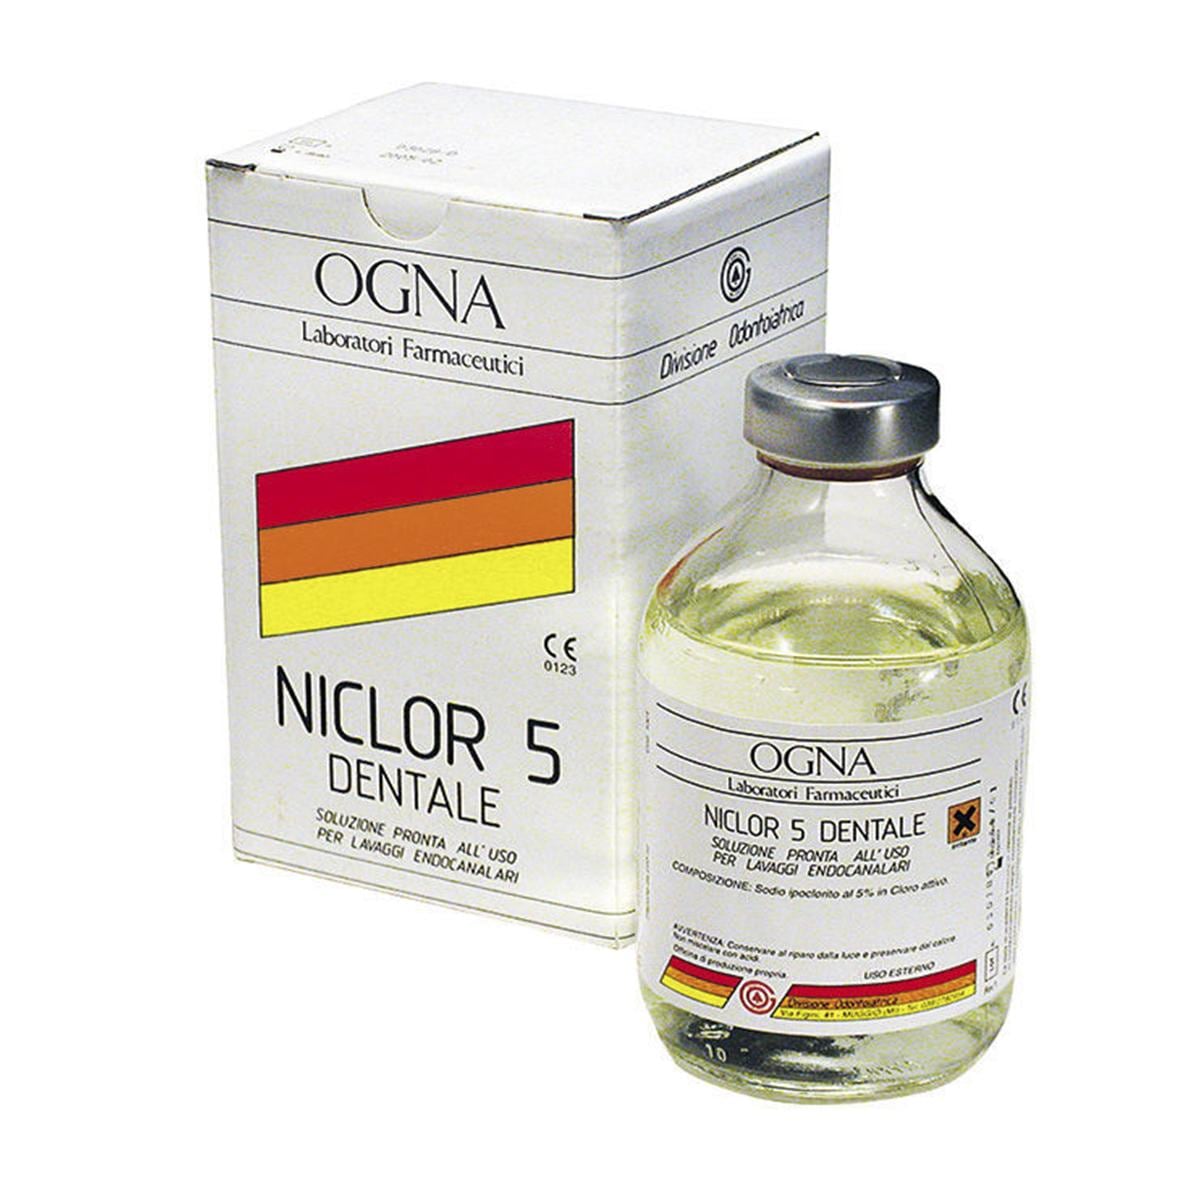 NICLOR 5 - Flacone da 250 ml